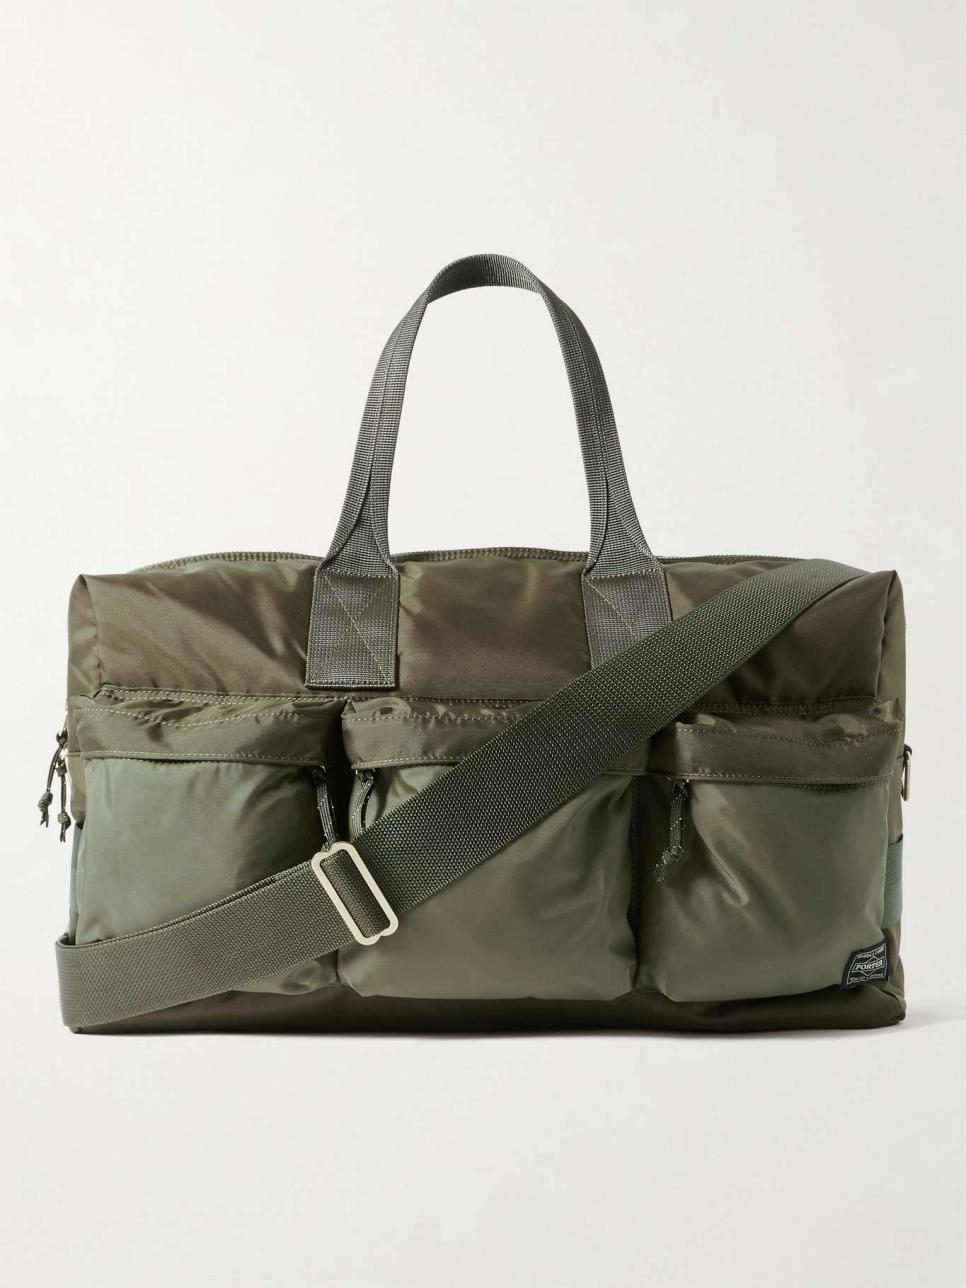 Porter-Yoshida & Co Force 2Way Nylon Duffle Bag